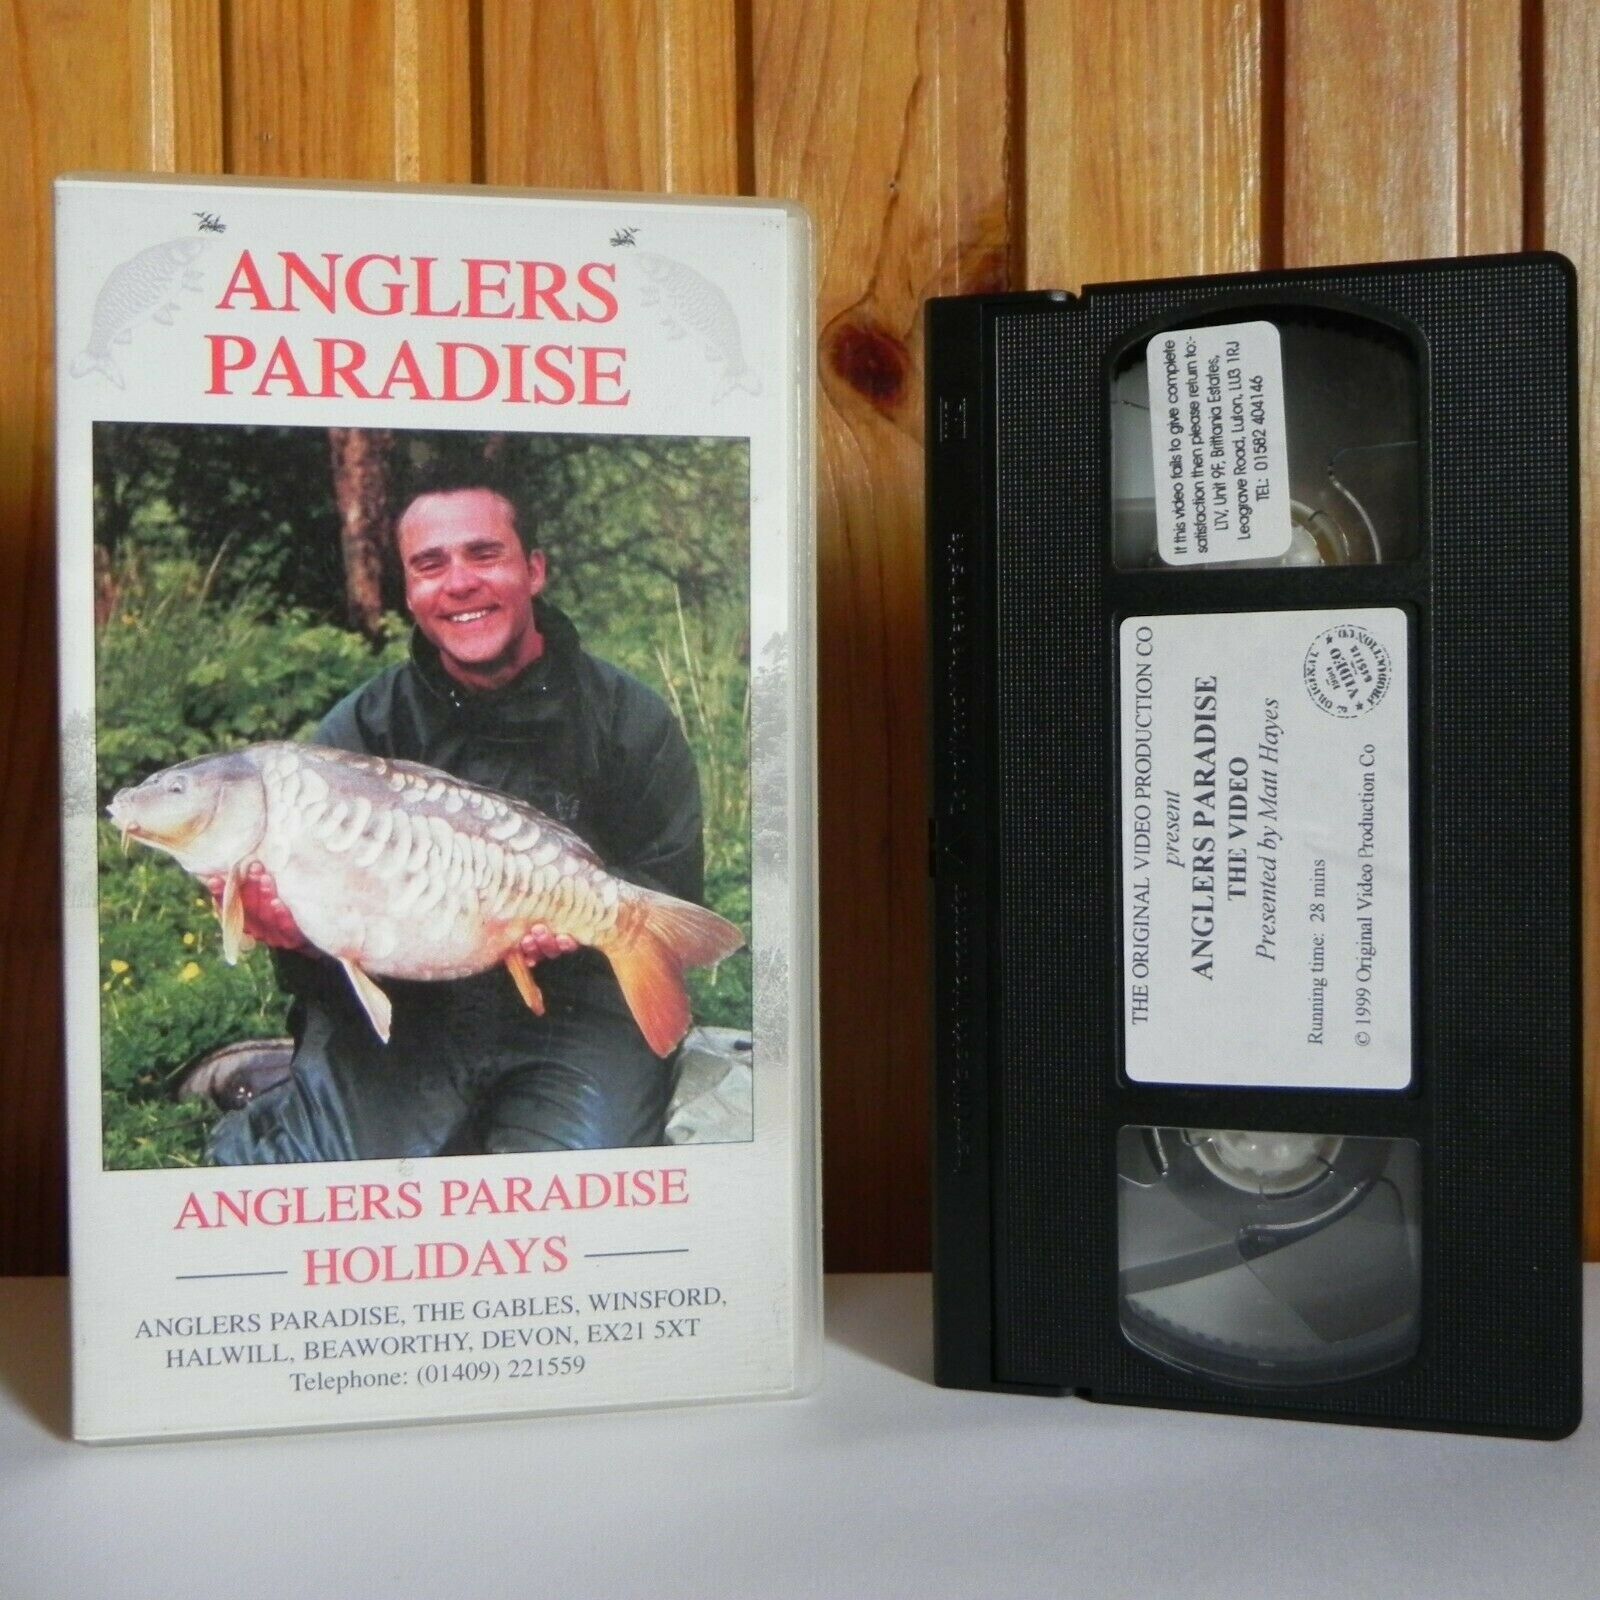 Anglers Paradise: Holidays - Fishing - Exotic Fish - 12 Lakes - Pal VHS-